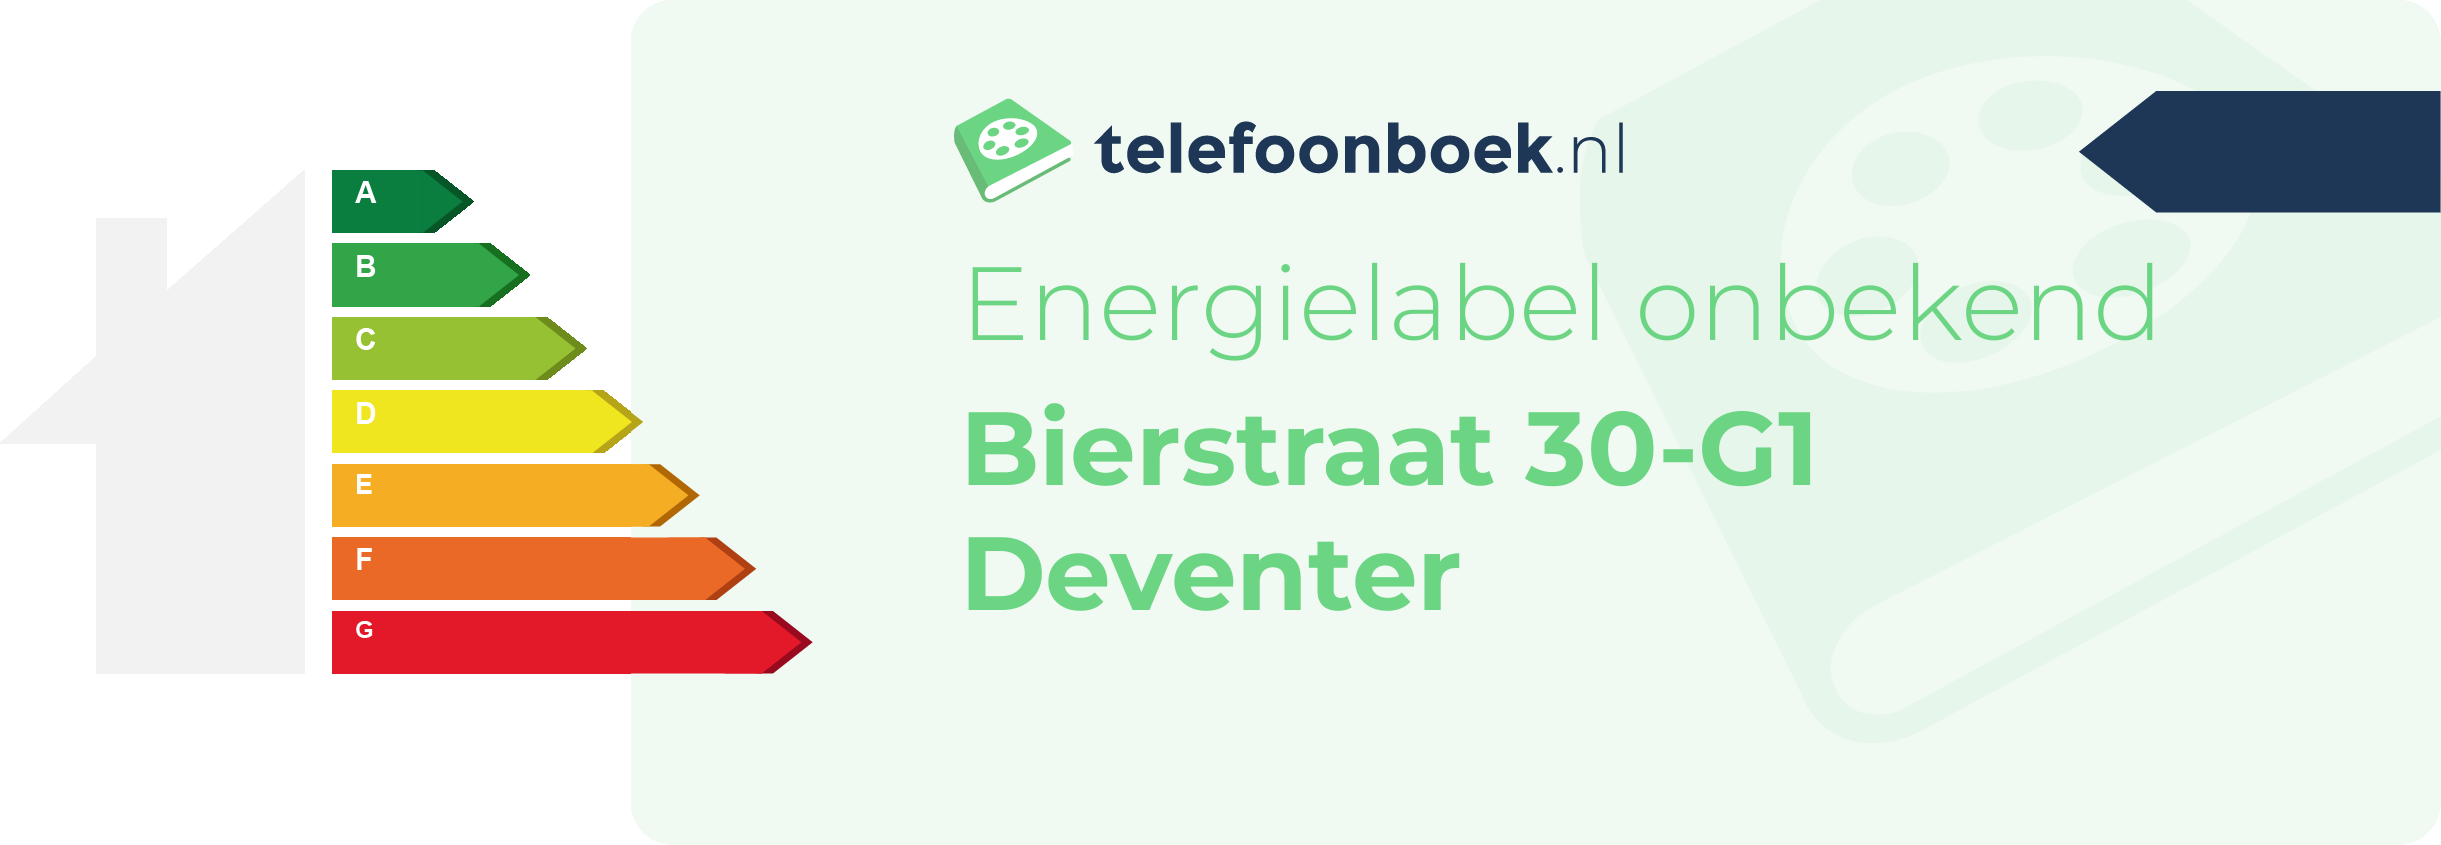 Energielabel Bierstraat 30-G1 Deventer